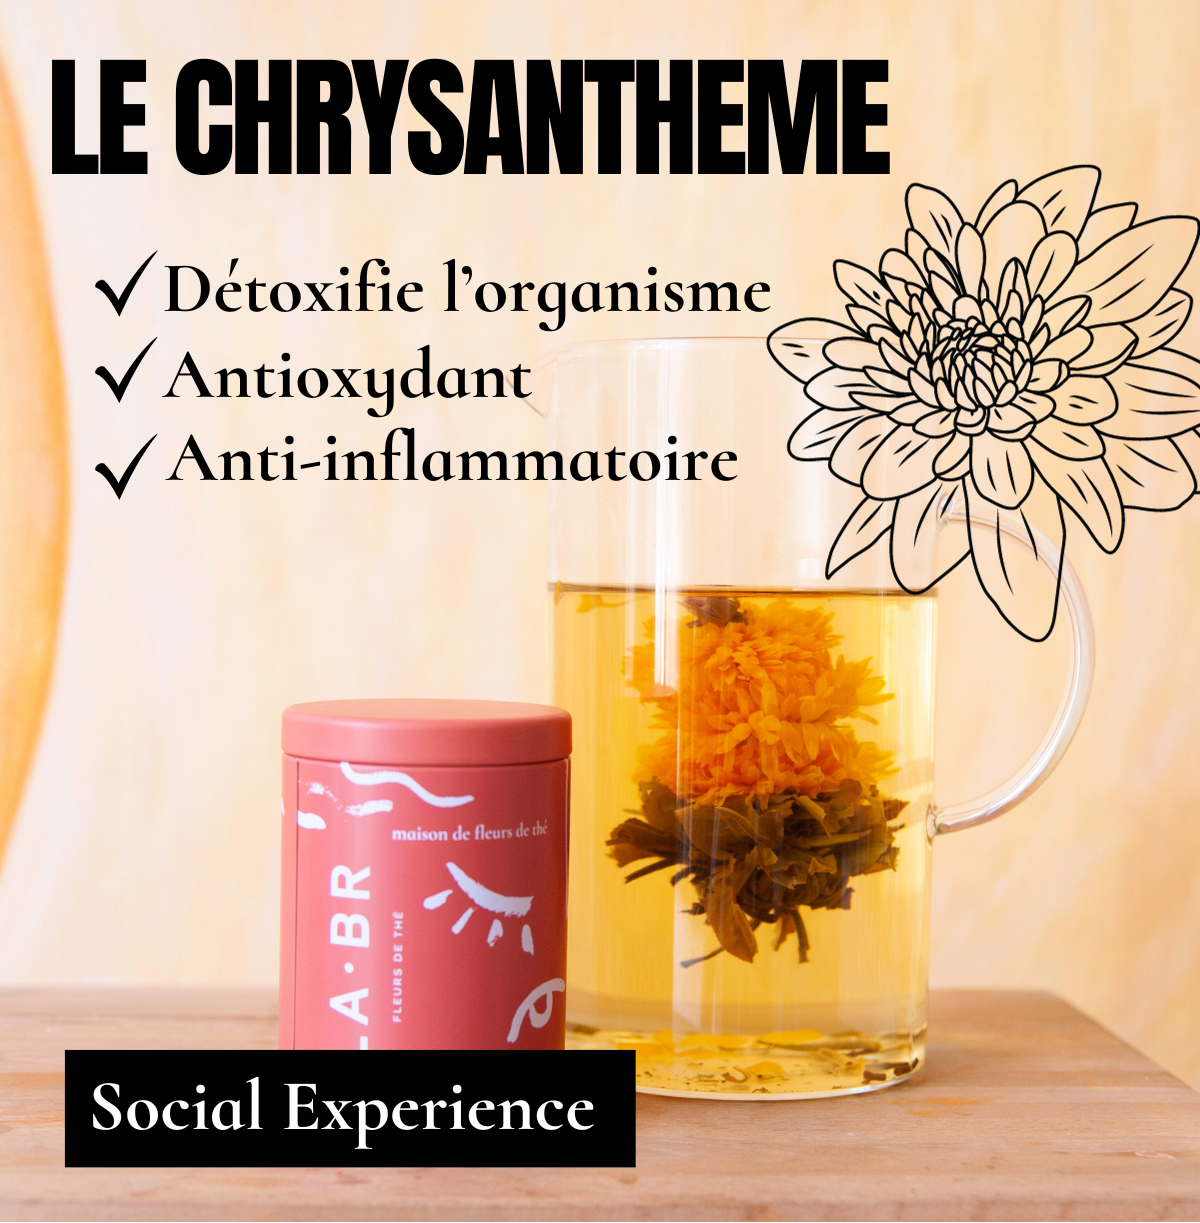 bienfaits chrysantheme labr.. LABR Paris première maison de fleur de thé